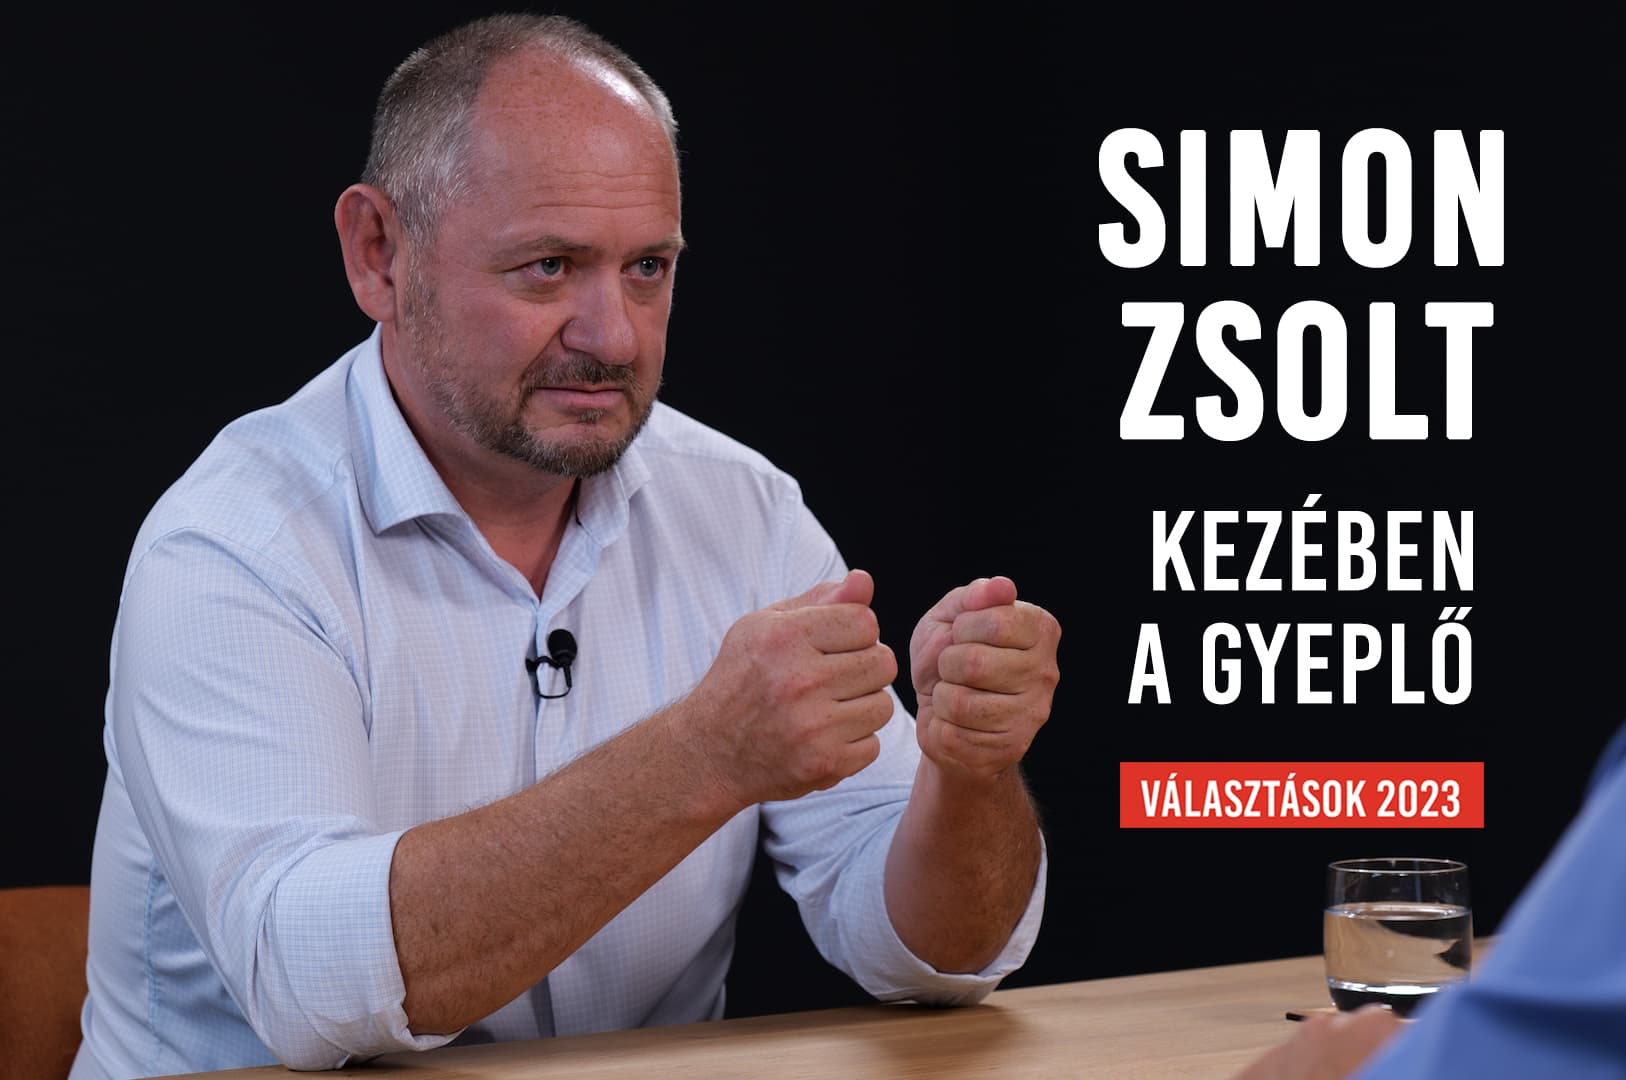 SIMON ZSOLT: "Aki szerint Ficót tisztelni kell, az a magyarok ellen cselekszik!" - VÁLASZTÁSOK 2023